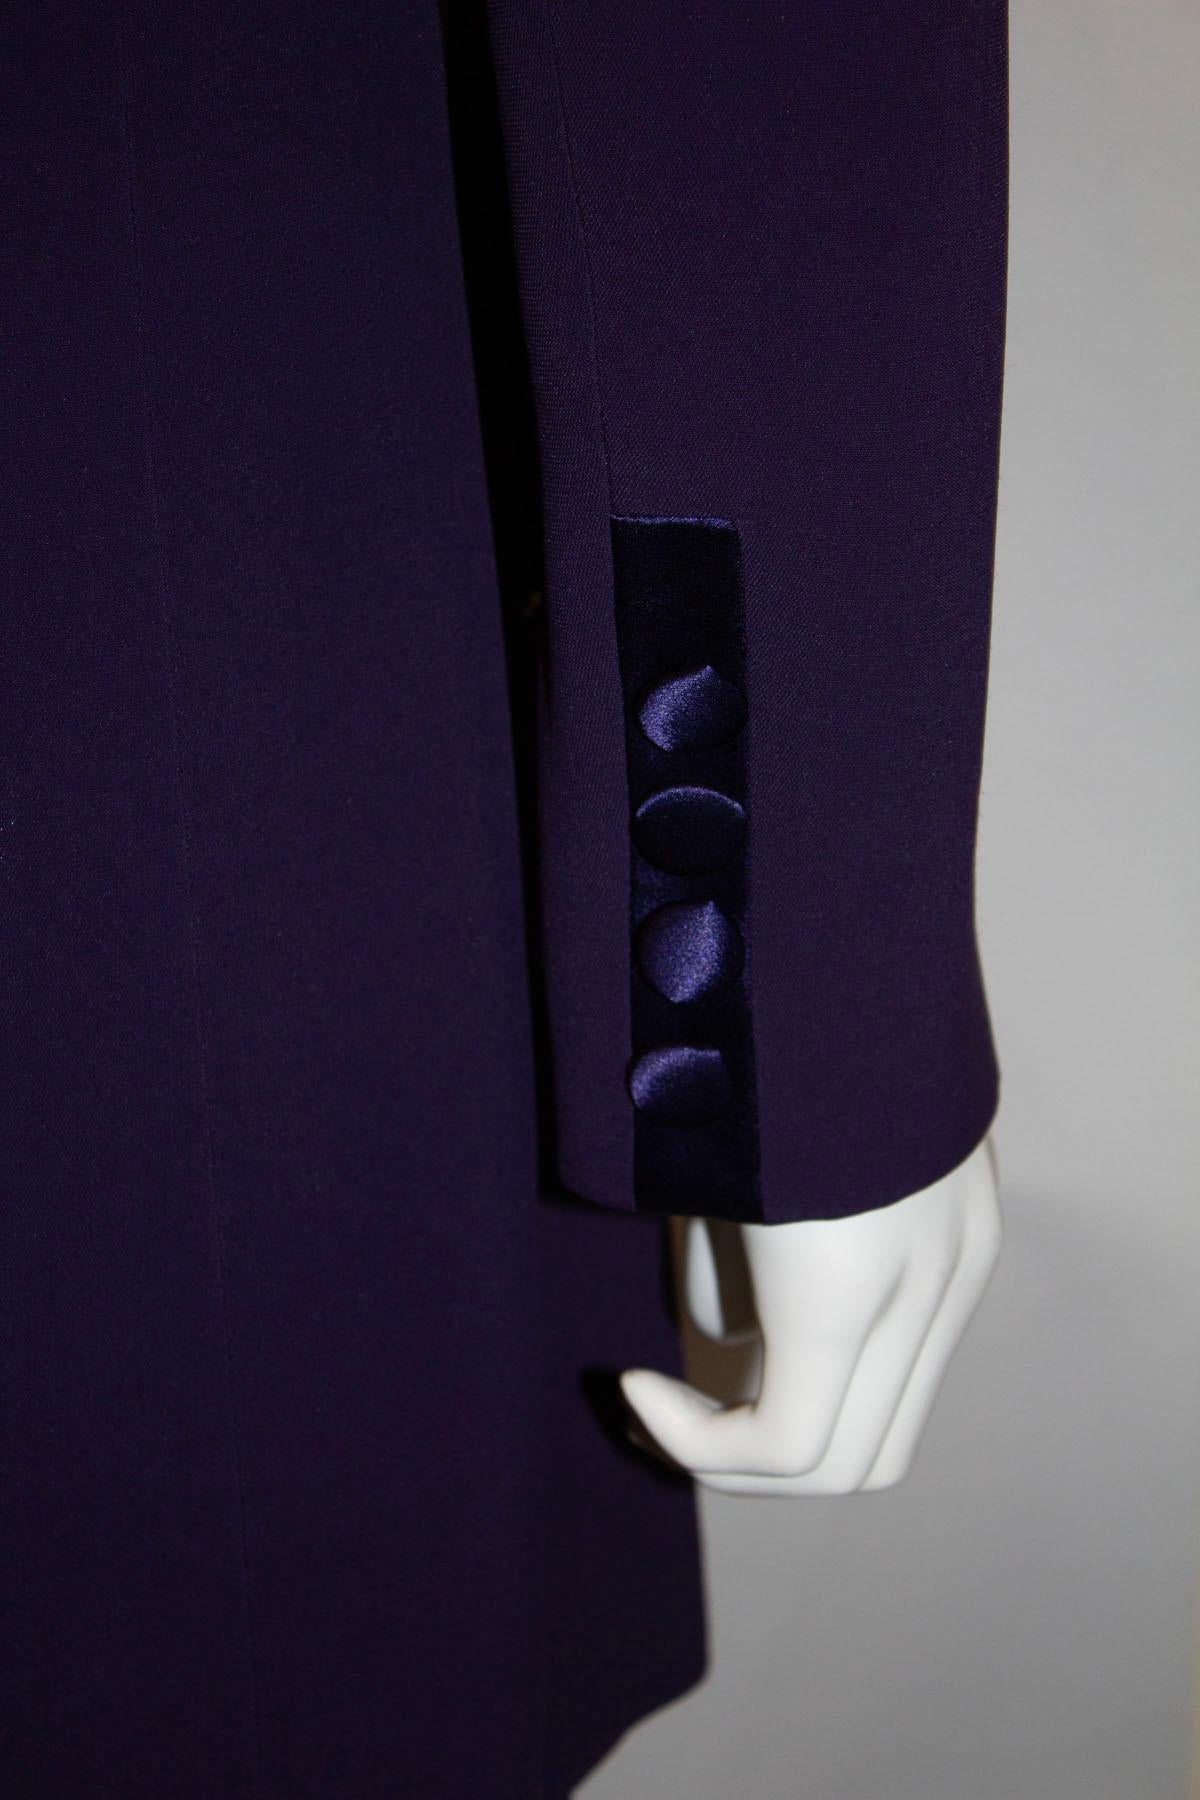 Un superbe tailleur pantalon vintage de Candice Fraiberger . La veste est longue et comporte deux poches,  une fermeture à deux boutons et des revers originaux. Le pantalon est doté d'une ouverture latérale zippée et d'un haut assorti.
Mesures Veste